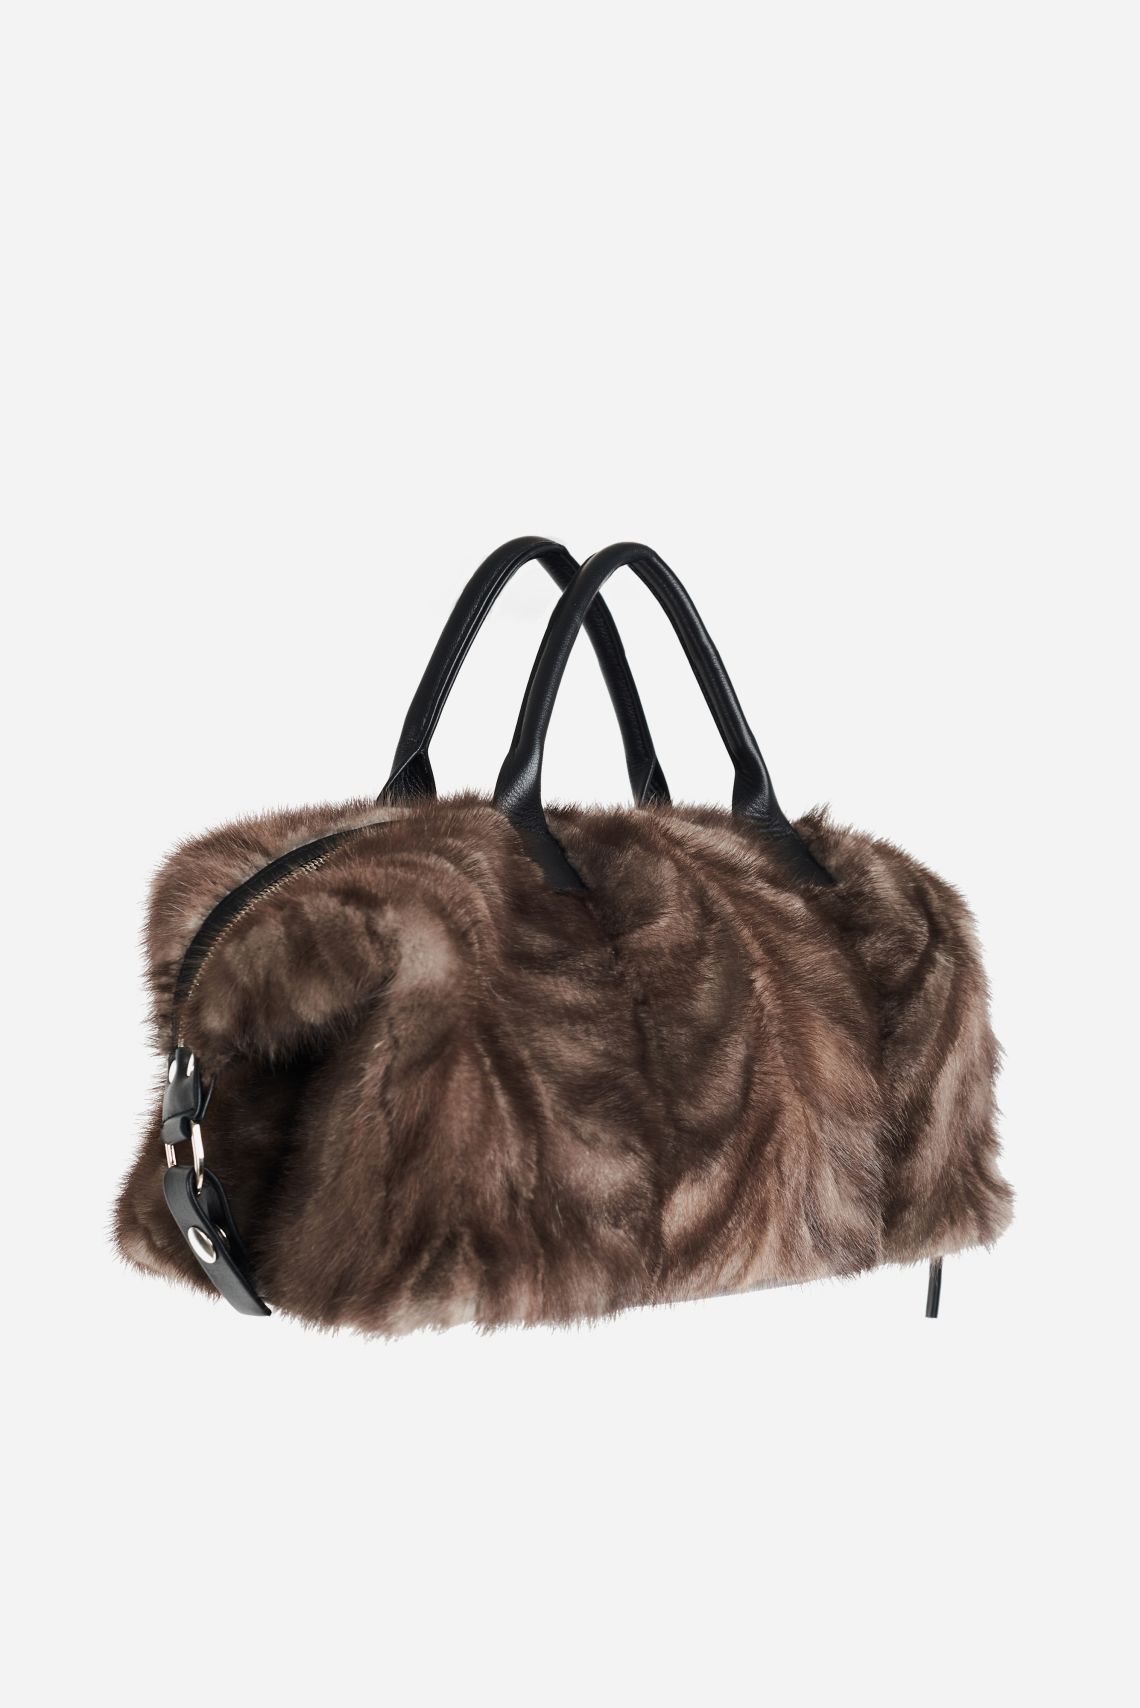 Fur Upcycle Handbag